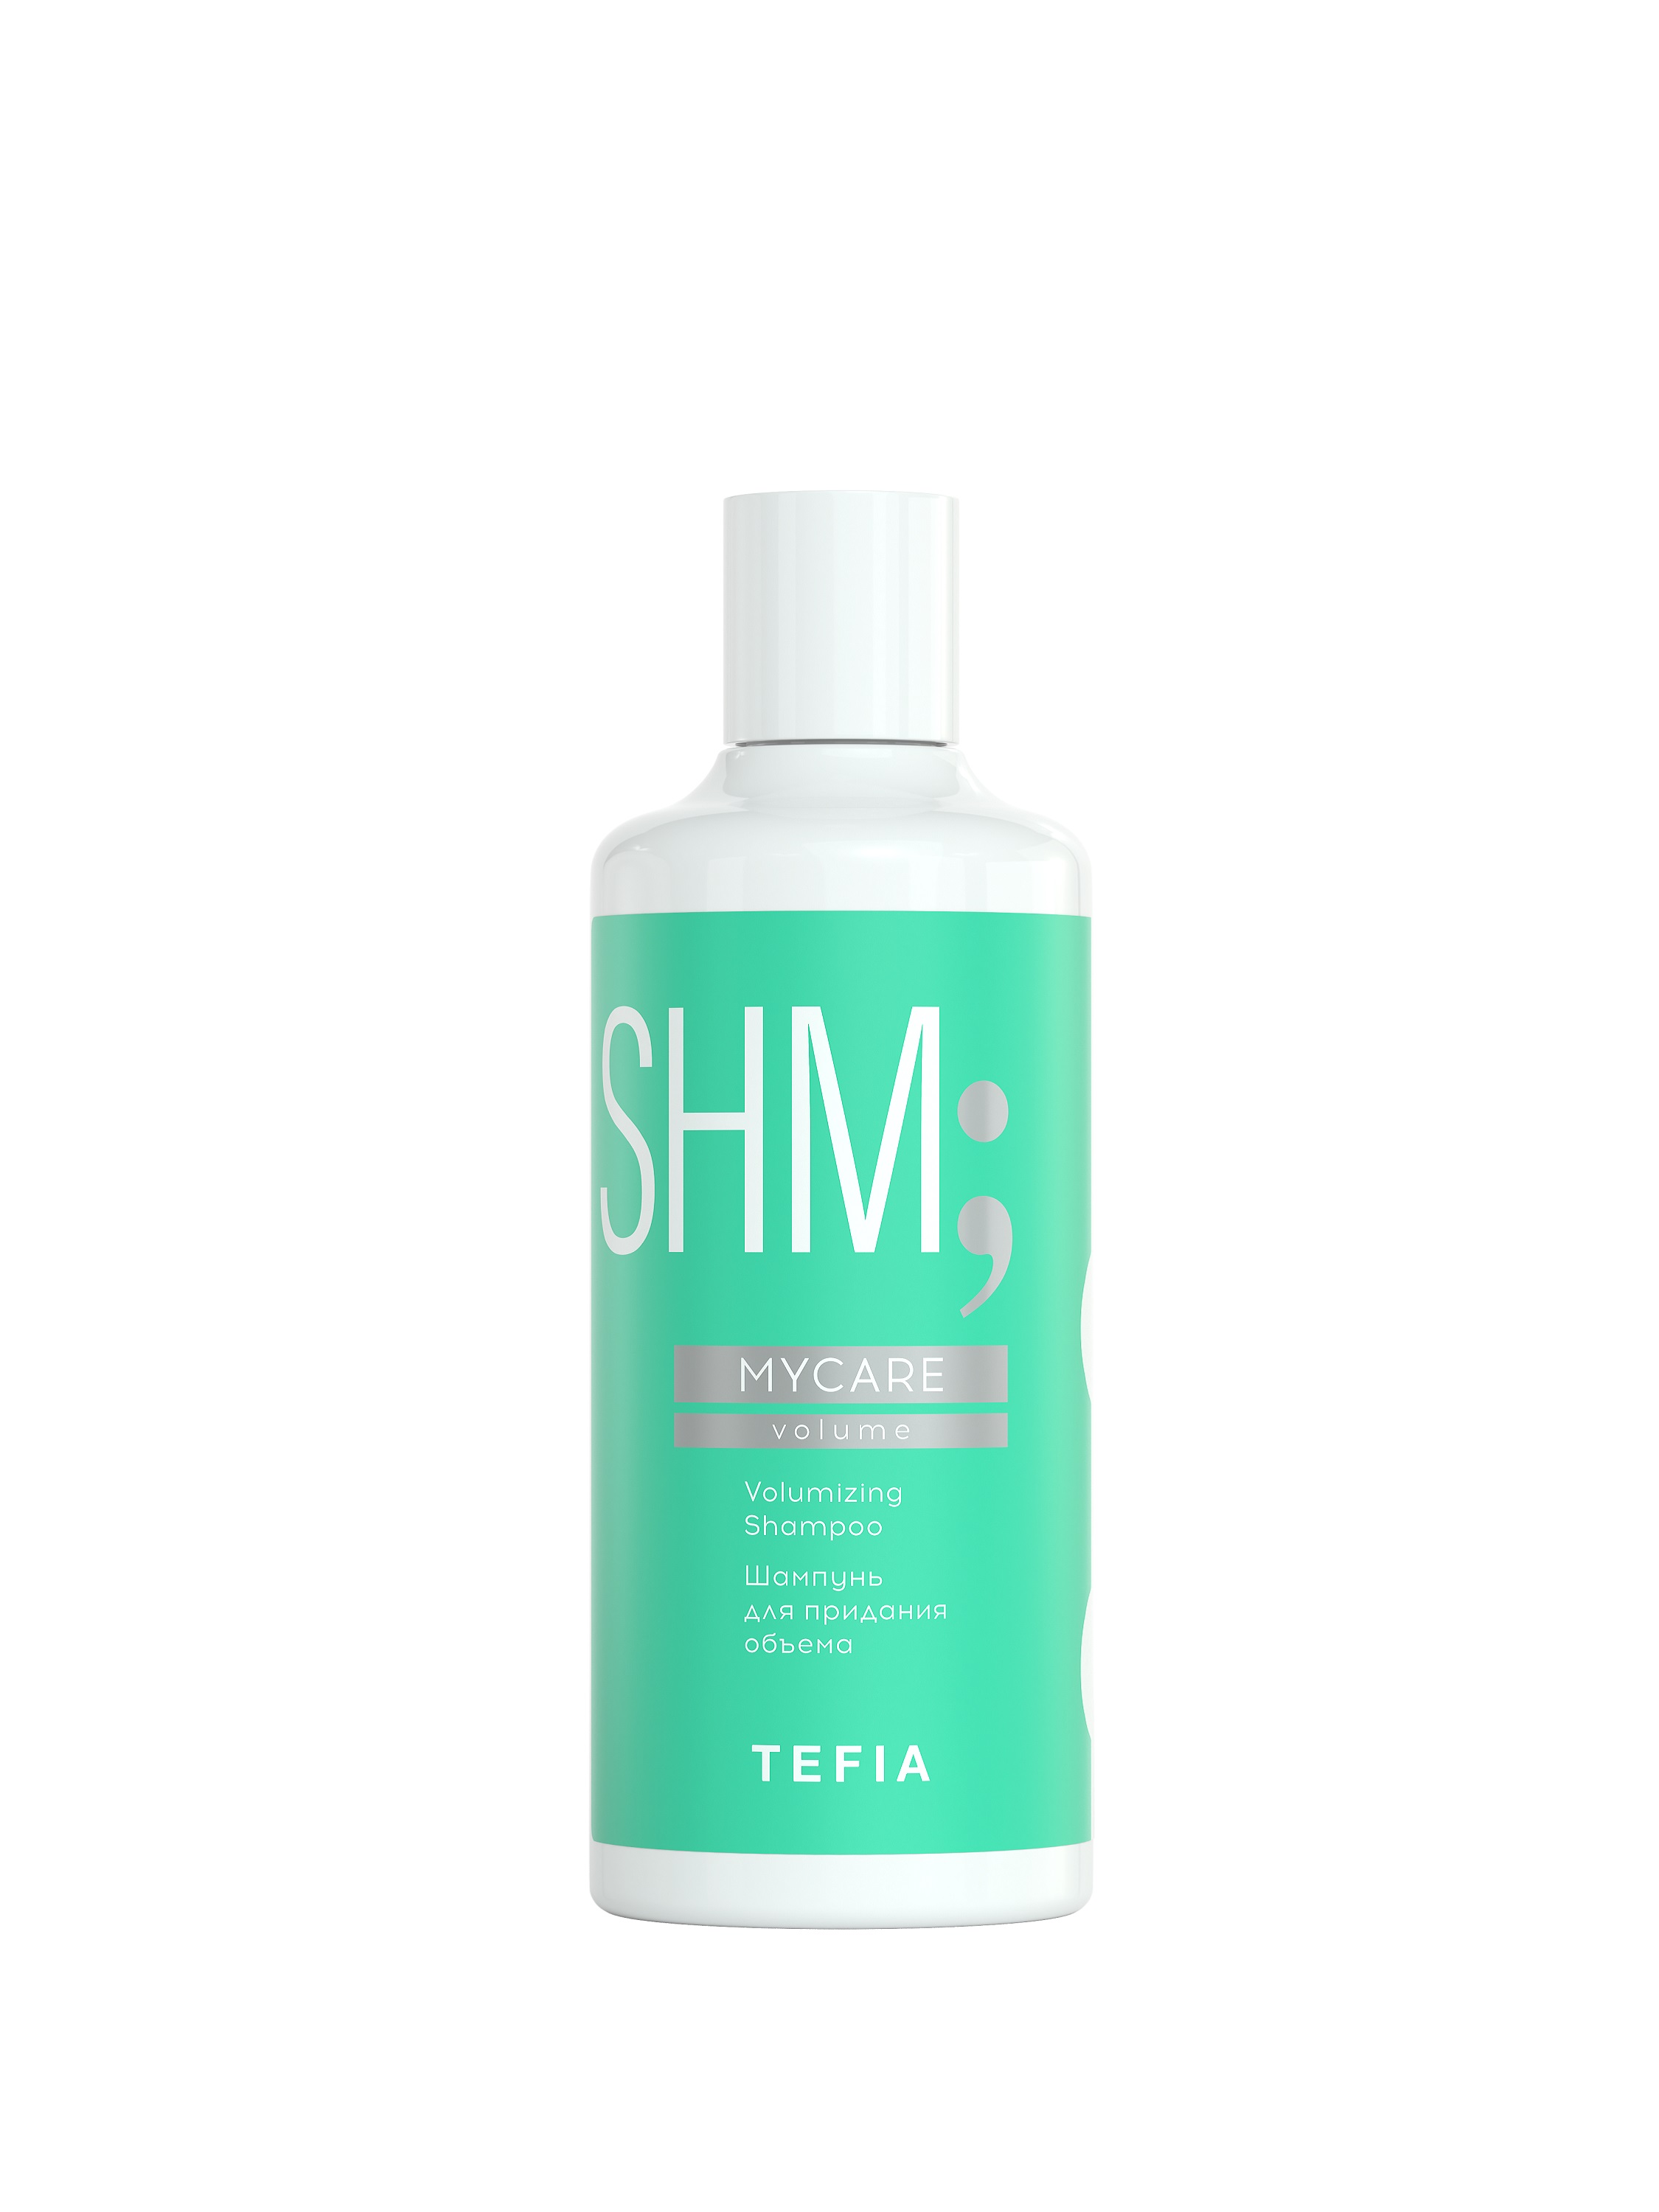 Шампунь TEFIA для придания объема профессиональный Volumizing Shampoo 300мл, Линия MYCARE